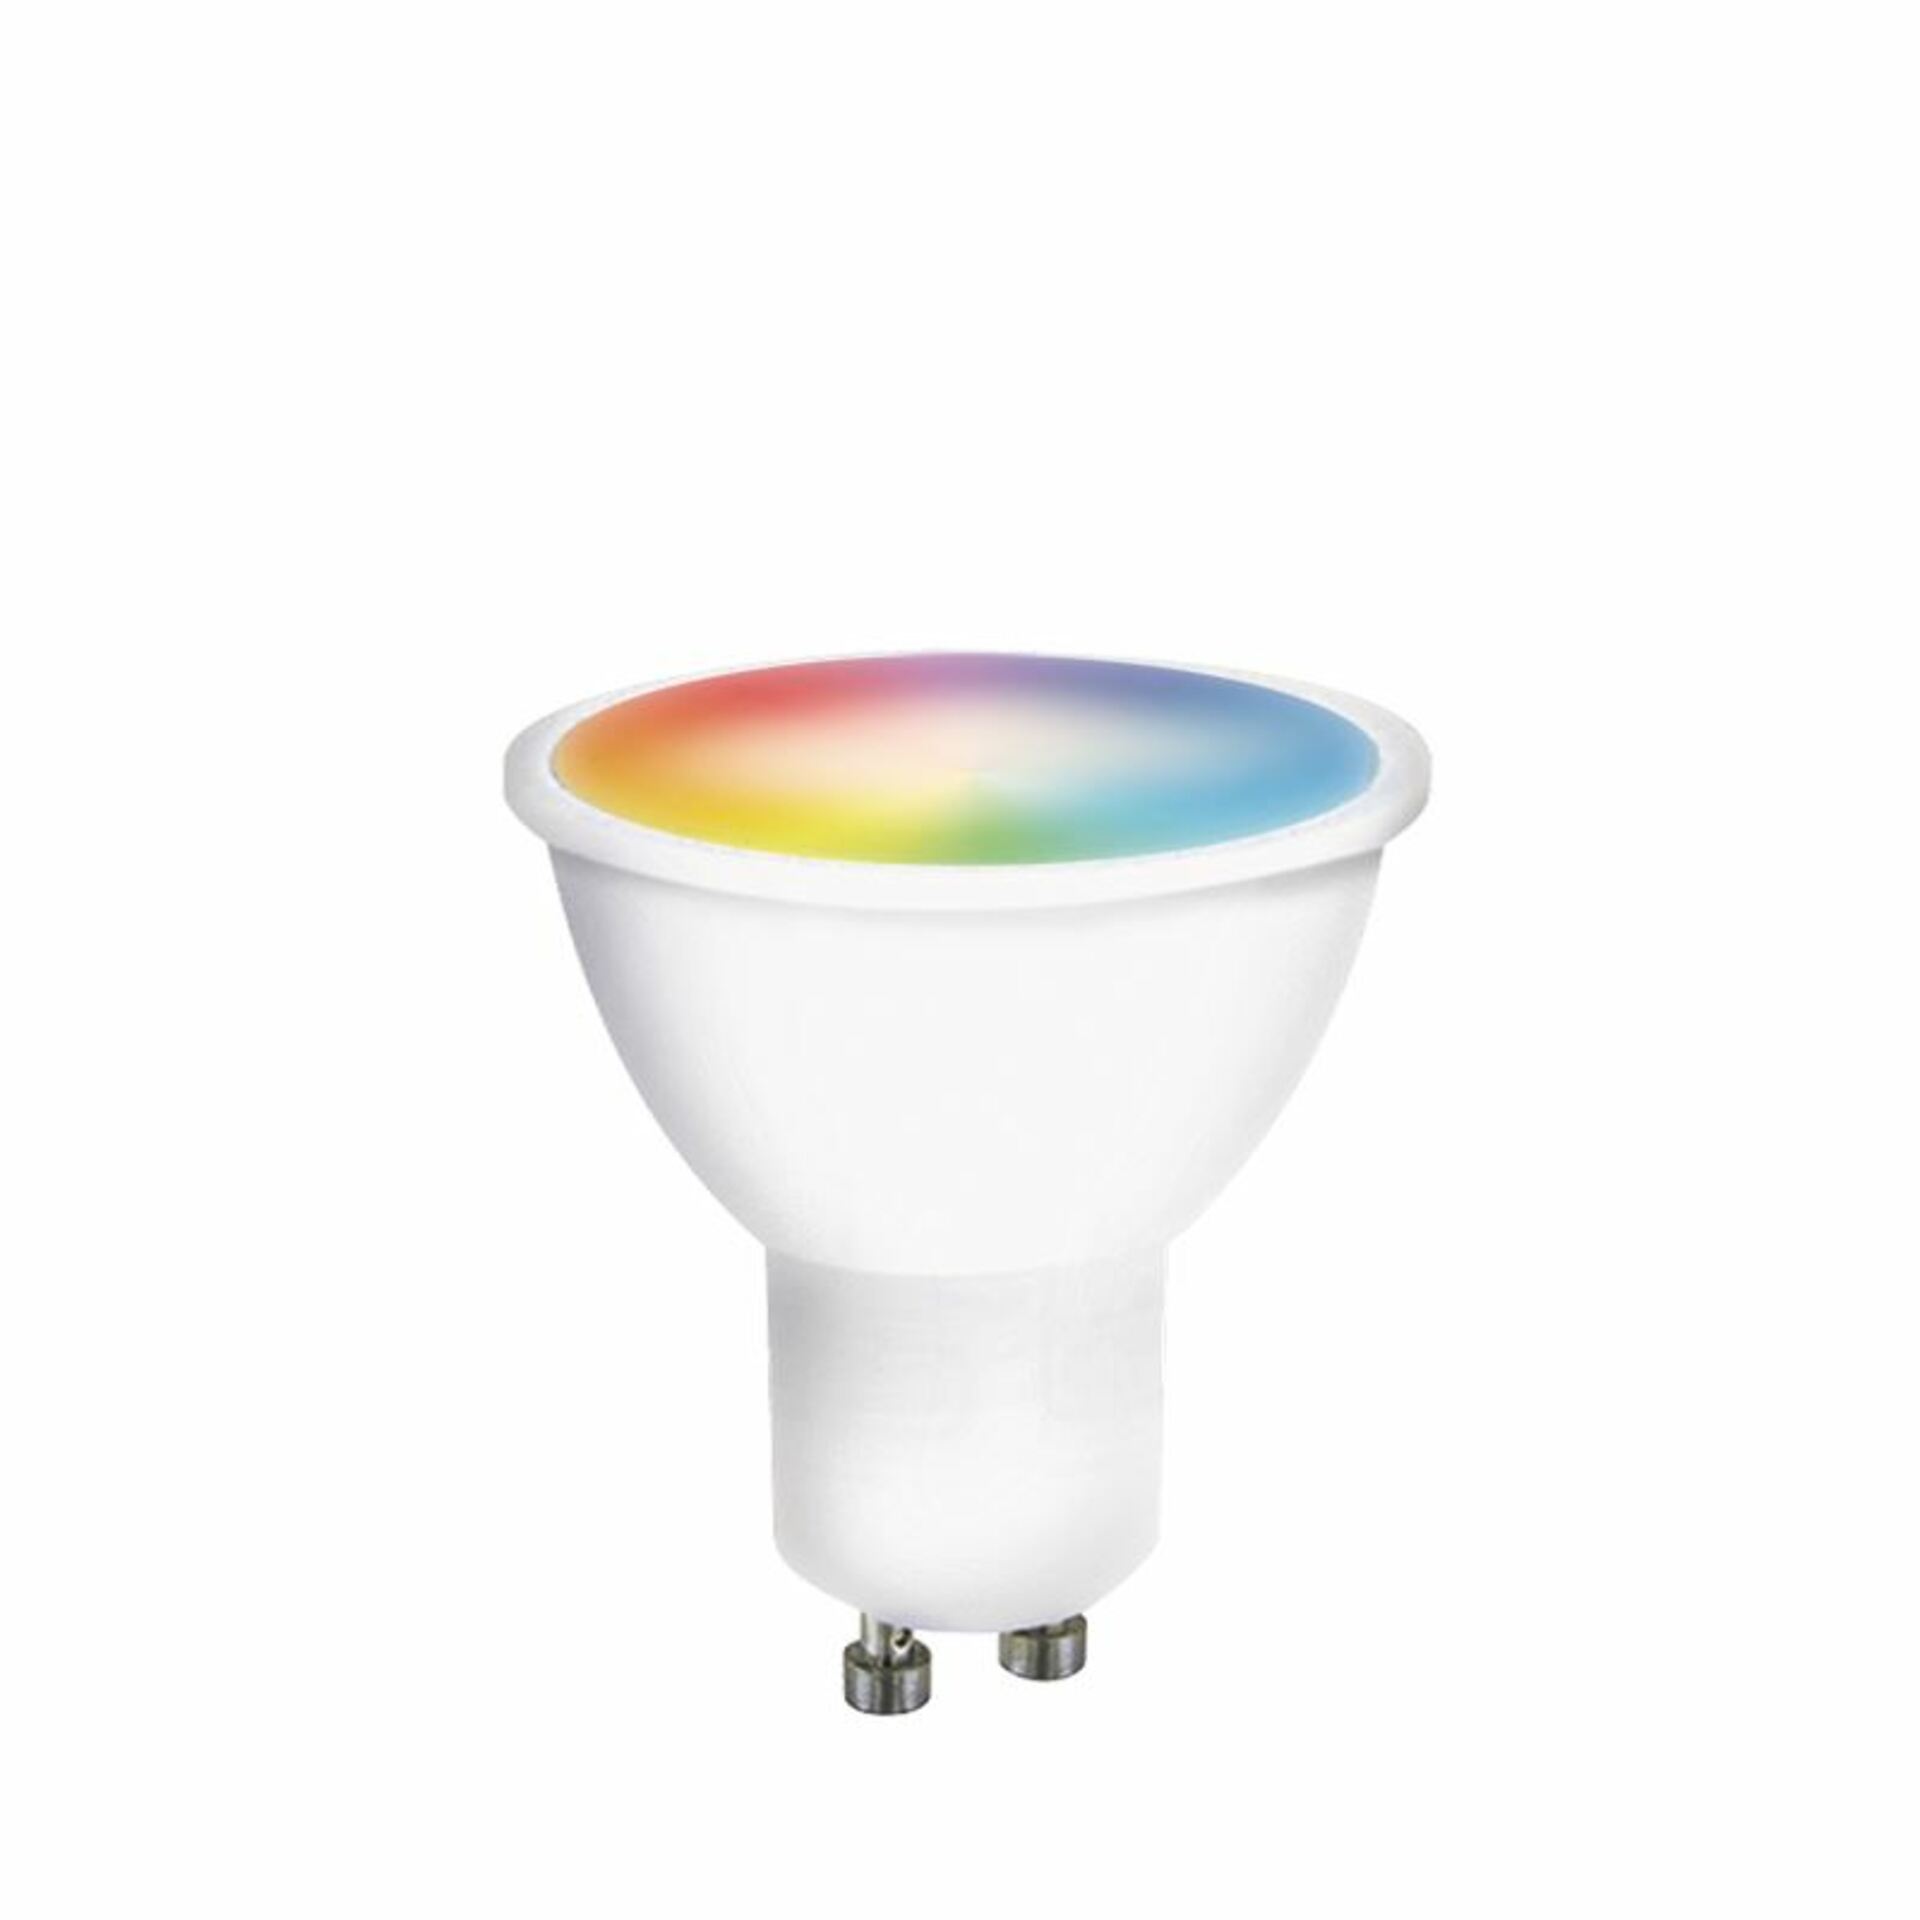 Solight LED SMART WIFI žárovka, GU10, 5W, RGB, 425lm WZ326